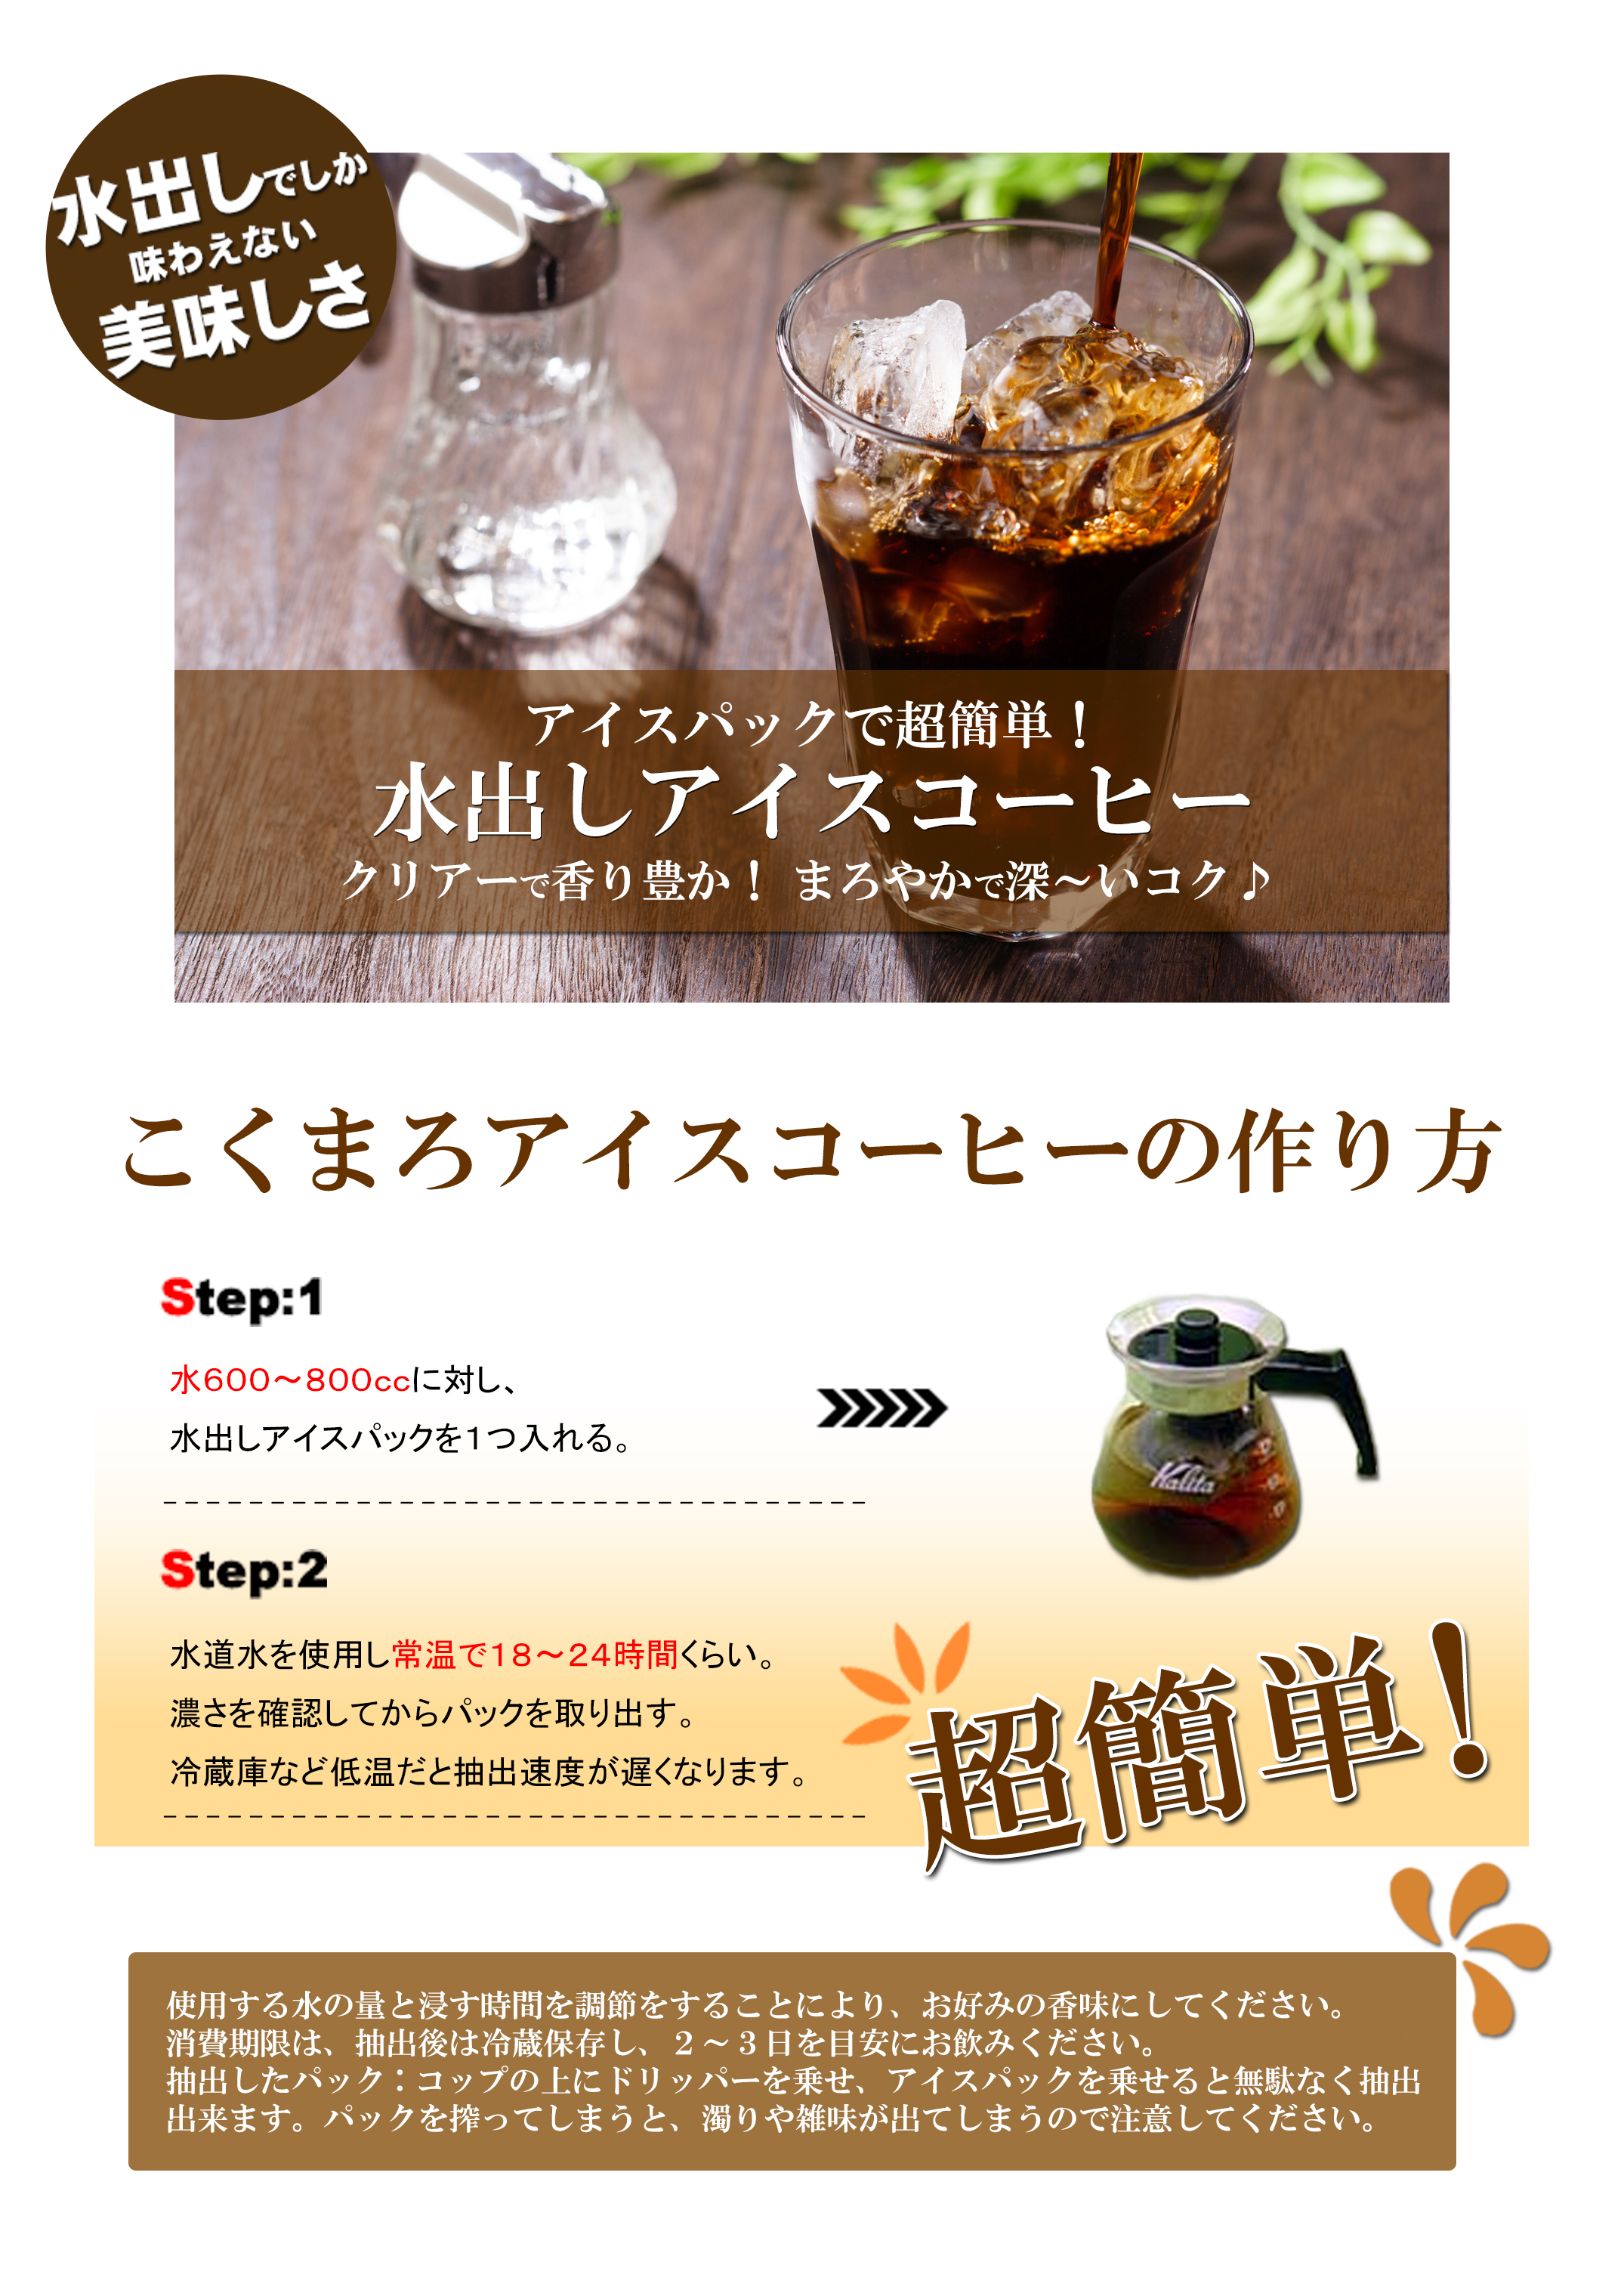 【水出しコーヒー】アイスブレンド(40g×4パック)